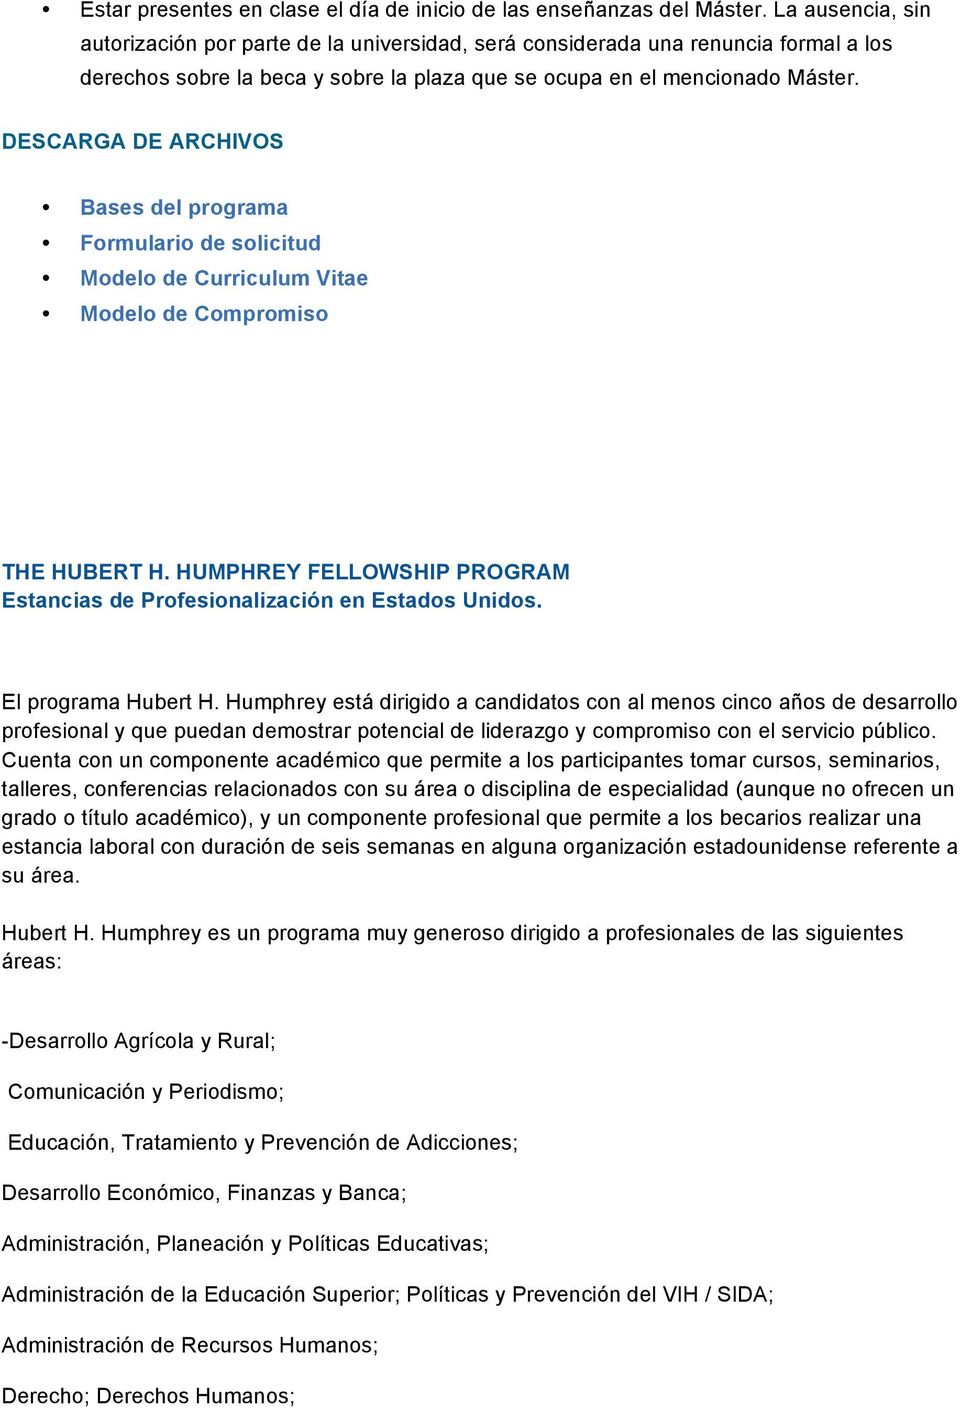 DESCARGA DE ARCHIVOS Bases del programa Formulario de solicitud Modelo de Curriculum Vitae Modelo de Compromiso THE HUBERT H.